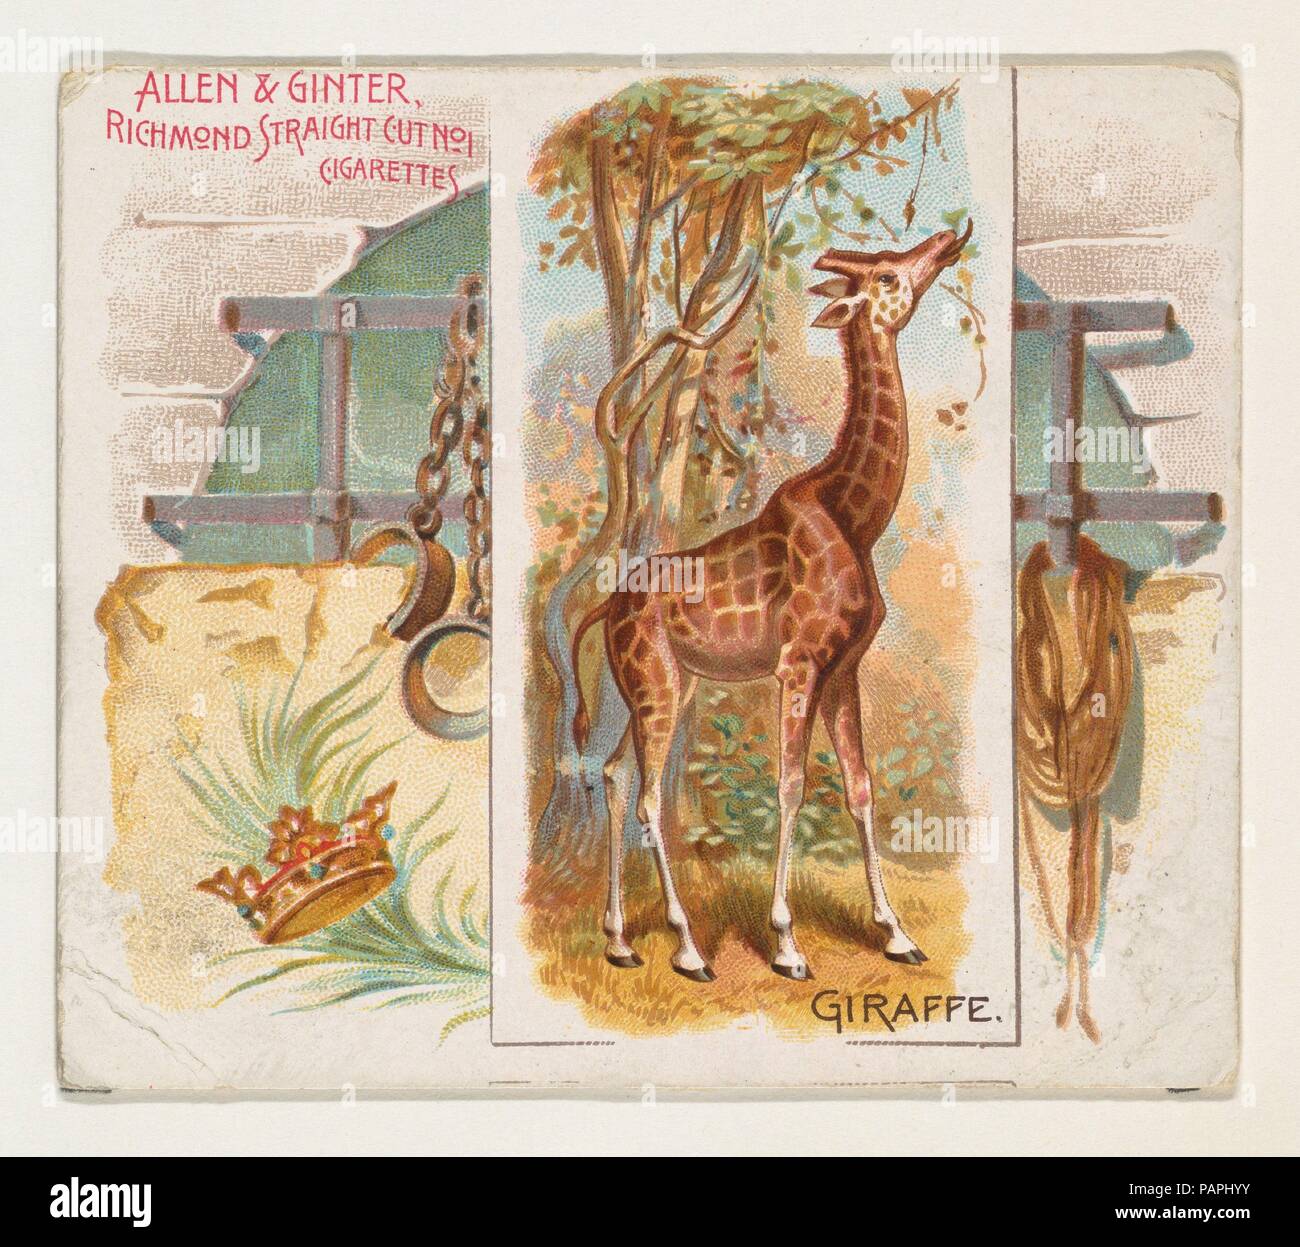 La giraffa, da quadrupedi serie (N41) per Allen & Ginter sigarette. Dimensioni: foglio: 2 7/8 x 3 1/4 in. (7,3 x 8,3 cm). Litografo: Litografia dal Lindner, Eddy & Claus (American, New York). Editore: Rilasciato da Allen & Ginter (American, Richmond, Virginia). Data: 1890. Grandi carte commercio dal 'quadrupedi' serie (N41), rilasciato nel 1890 a un set di 50 schede per promuovere Allen & Ginter marca di sigarette. La serie N41 riproduce le carte da N21 in una dimensione più grande. Museo: Metropolitan Museum of Art di New York, Stati Uniti d'America. Foto Stock